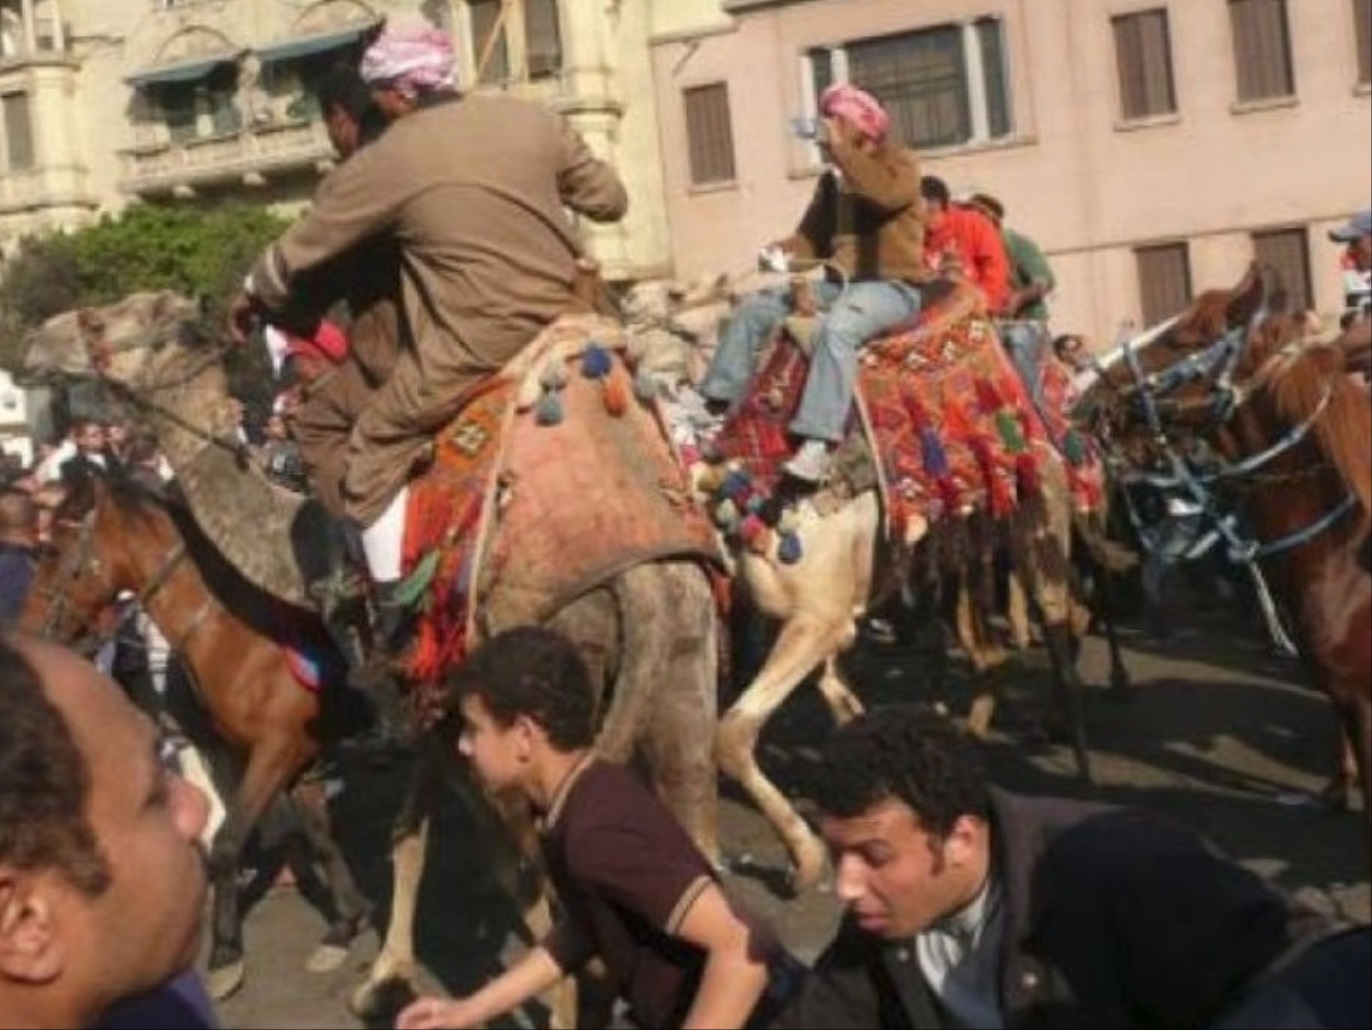 مجموعات مؤيدة لمبارك تشتبك مع المتظاهرين في ميدان التحرير رويترزأنصار مبارك ومجموعة من البلطجية يقتحمون ميدان التحرير على الخيول والجمال فيما عرف بموقعة الجمل